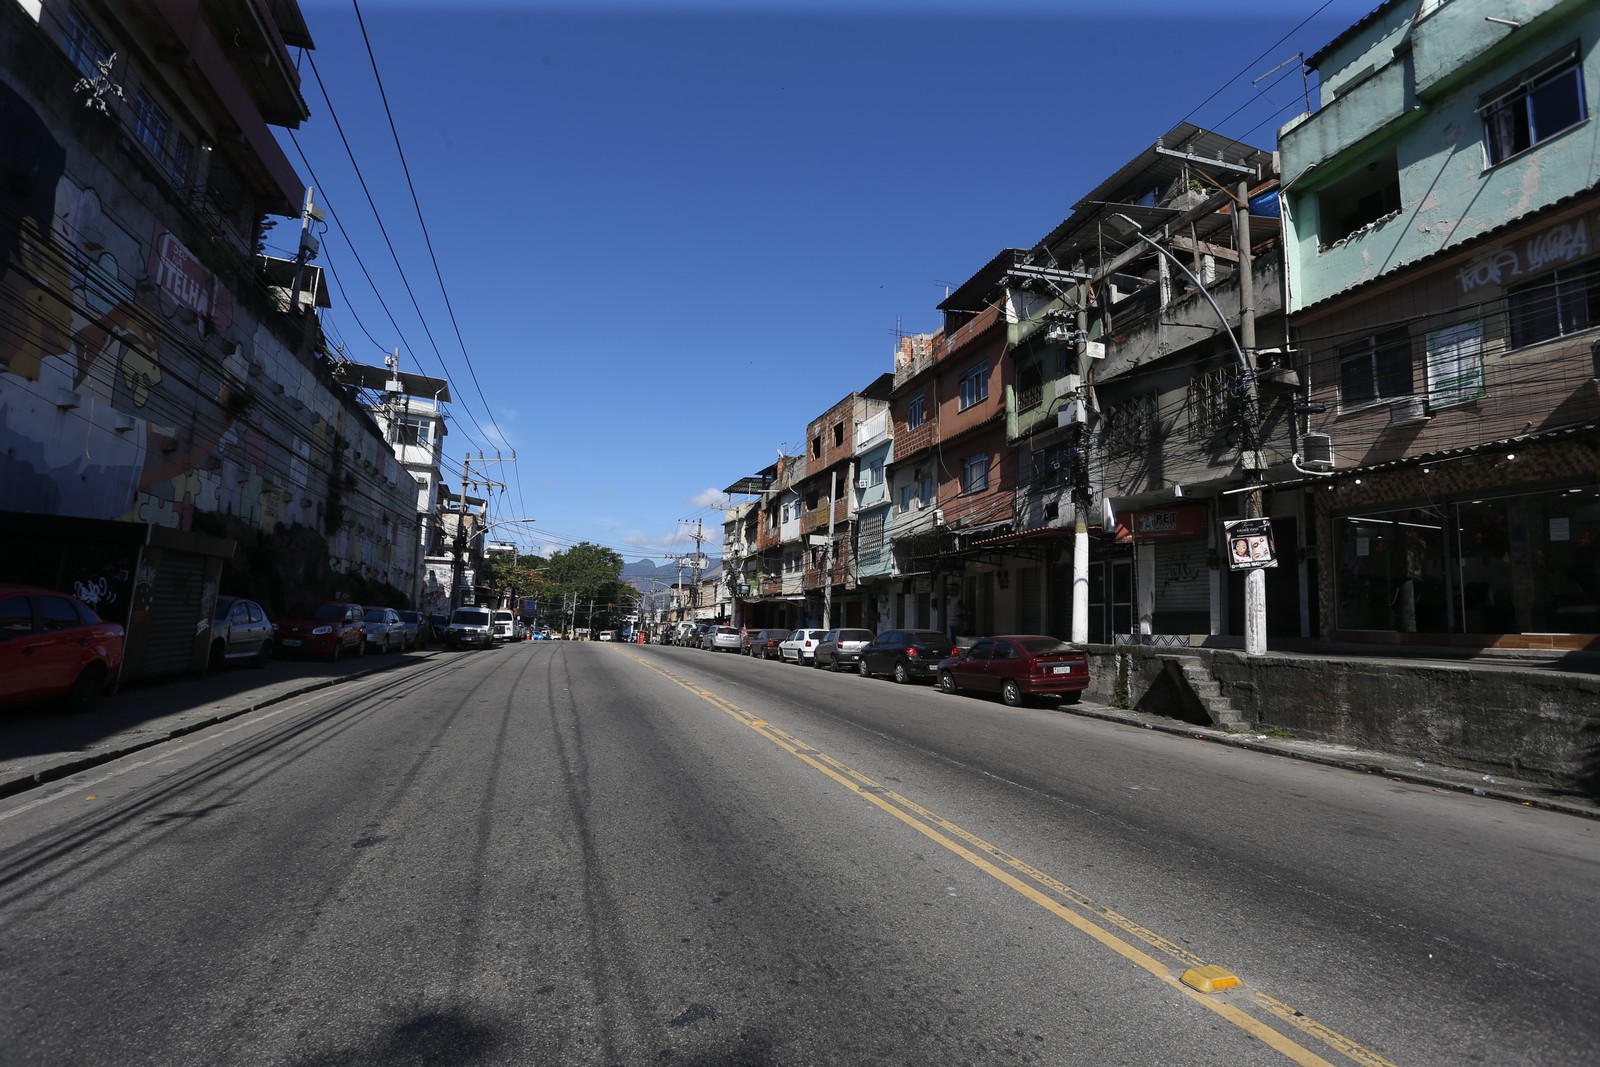 Operação da polícia alterou a rotina dos moradores do Complexo, e muitas ruas ficaram desertas — Foto: Fabiano Rocha / Agência O Globo